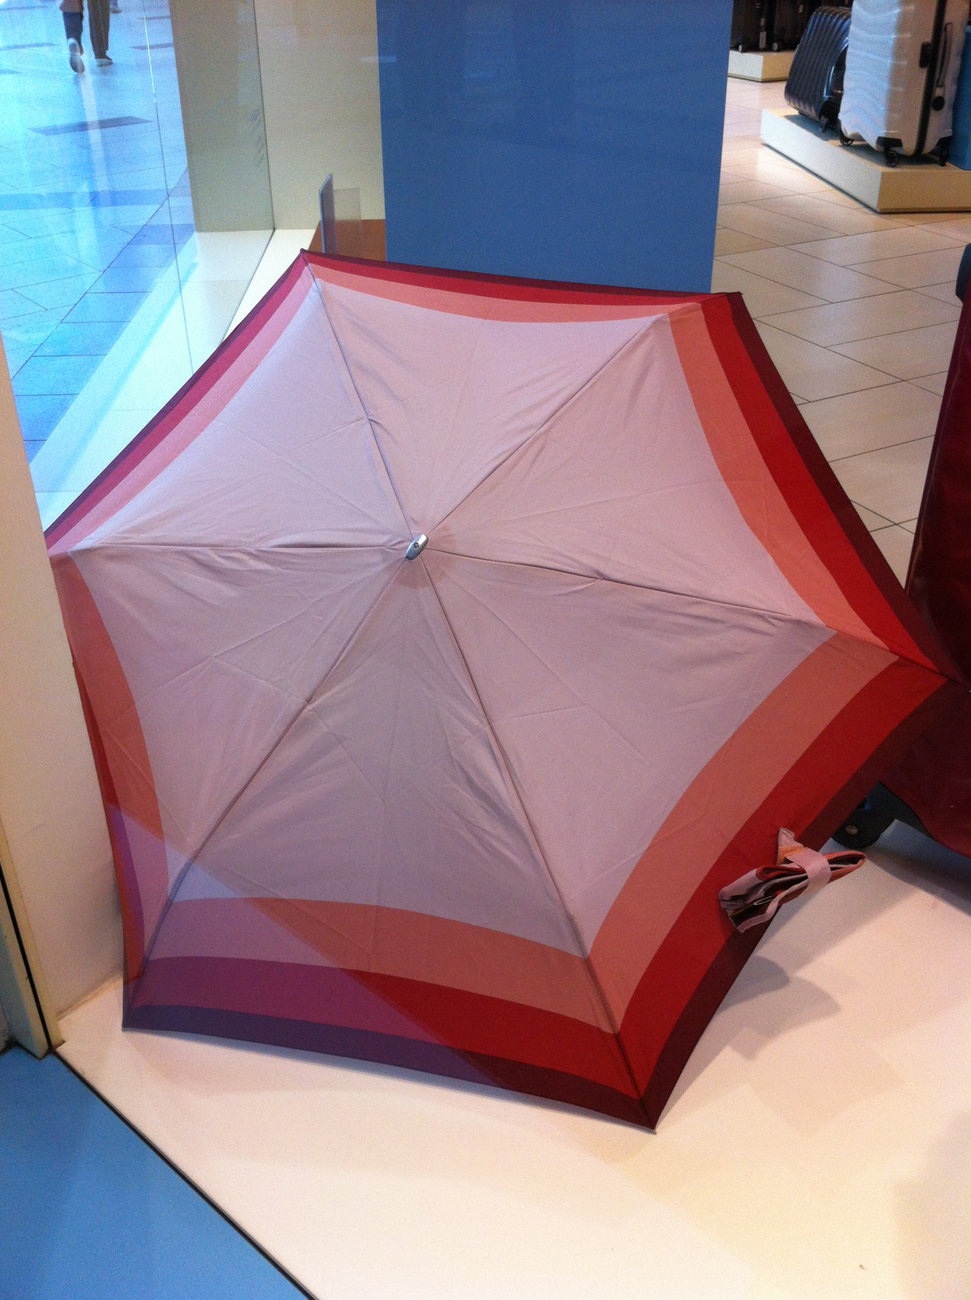 Nagyon könnyű ez az esernyő, de ez nem jelenti azt, hogy silány a minősége (bár még nem használtunk ilyet). Ha csak egy szezont bír ki az sem ciki, mert hát mégiscsak ezer forint körül van az ára...